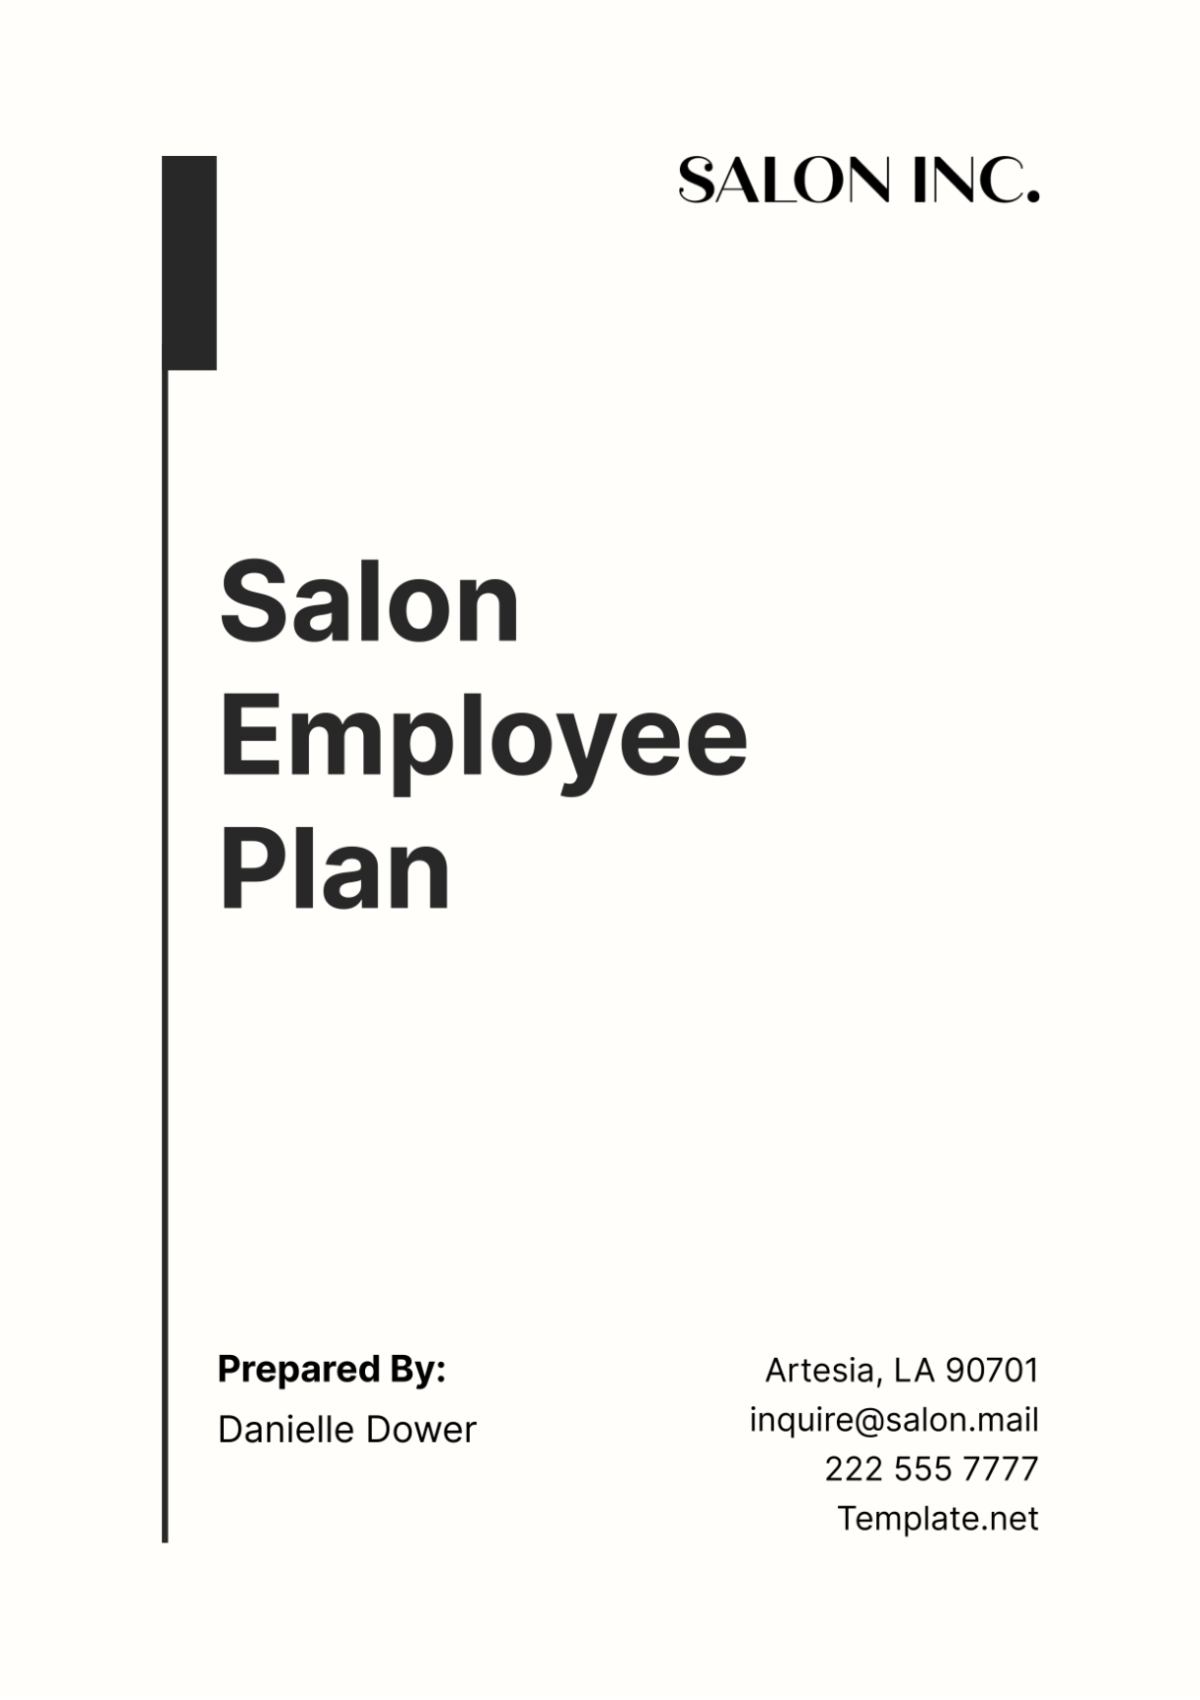 Free Salon Employee Plan Template